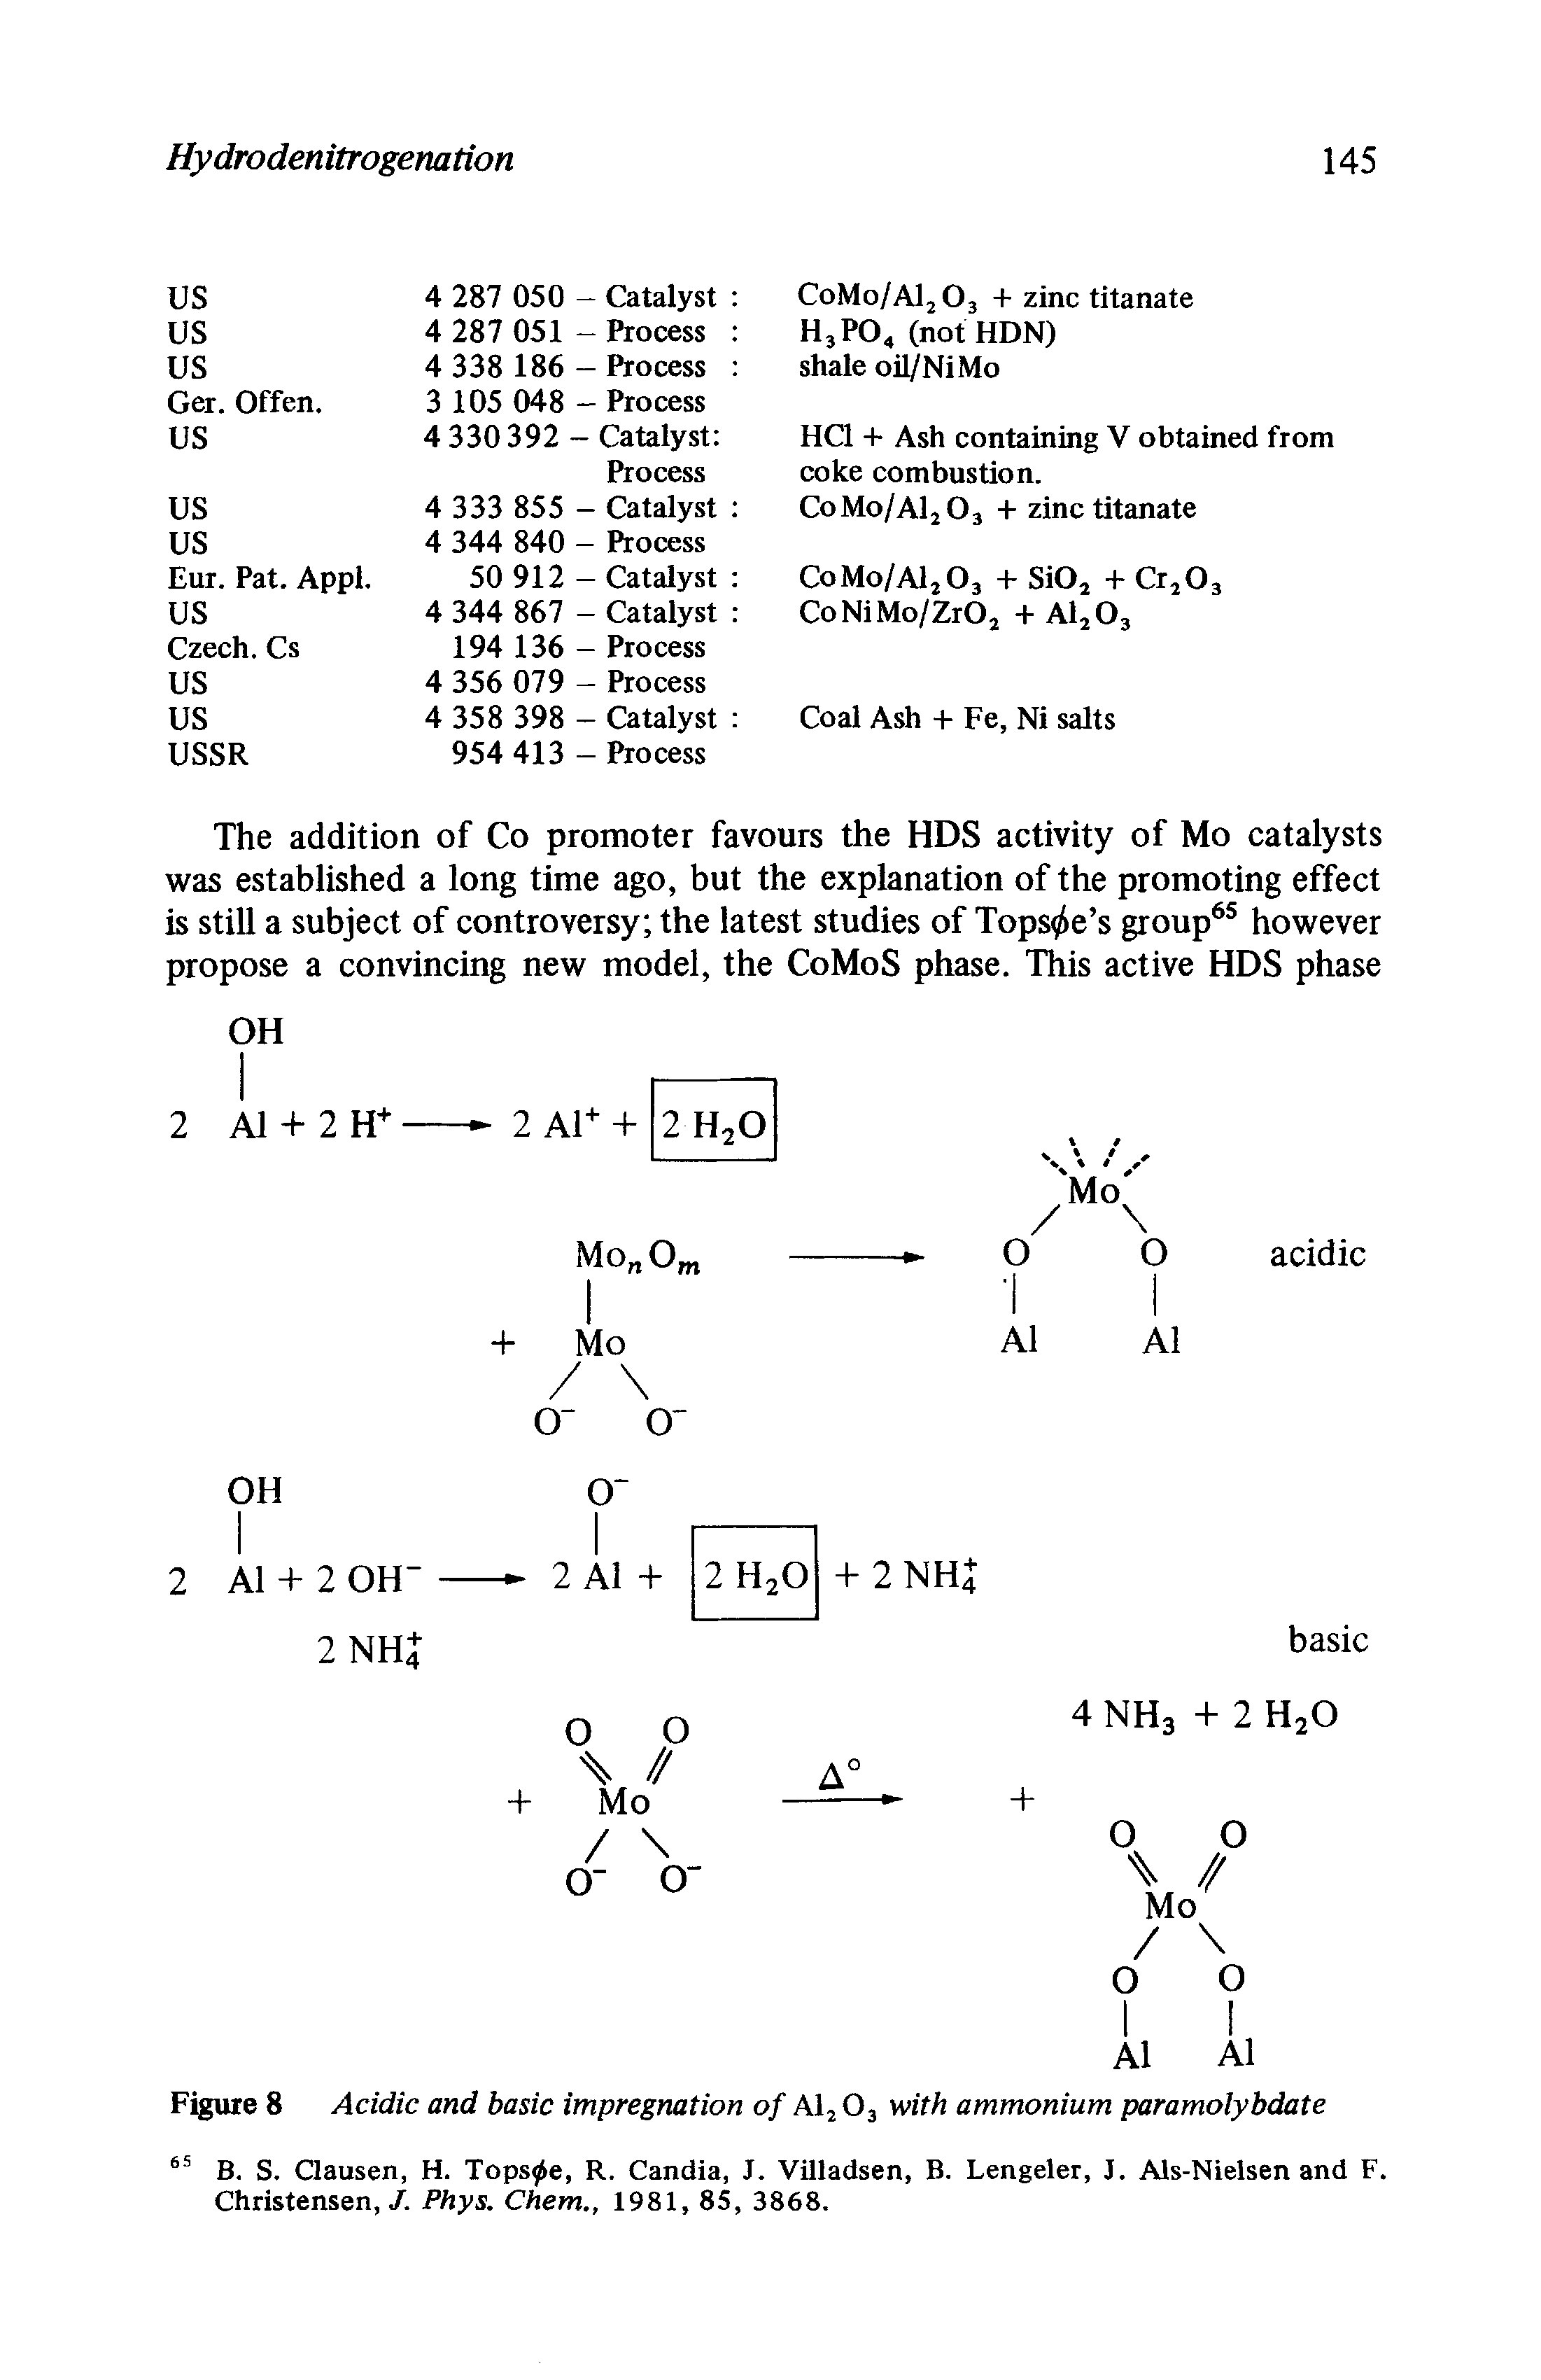 Figure 8 Acidic and basic impregnation of Al2 03 with ammonium paramolybdate...